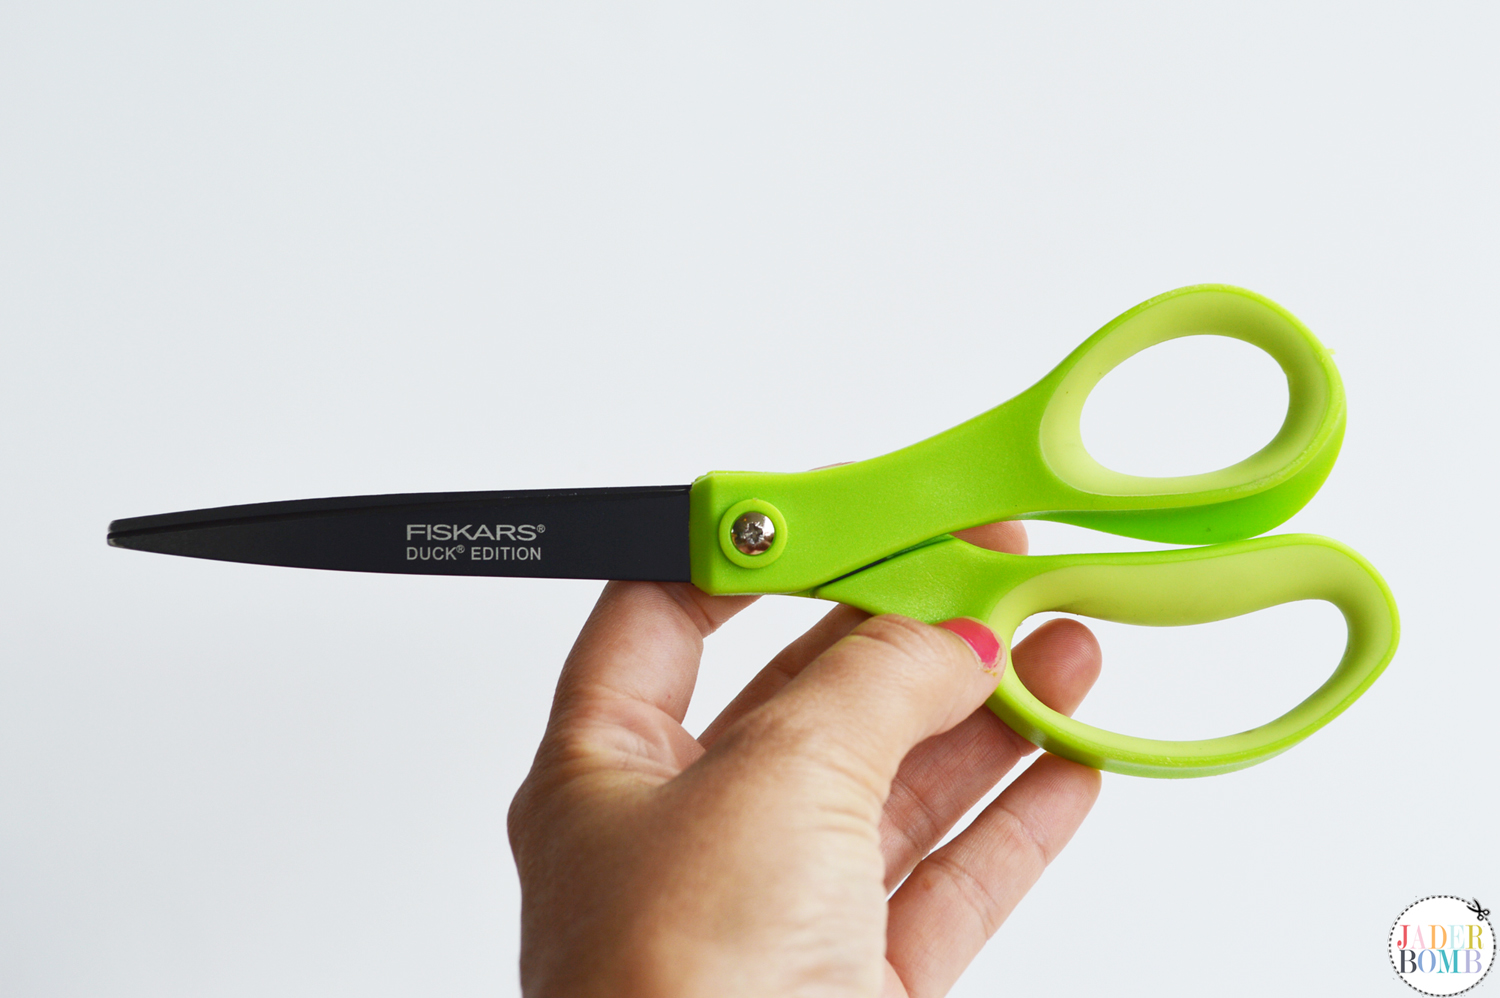 duck edition fiskars scissors